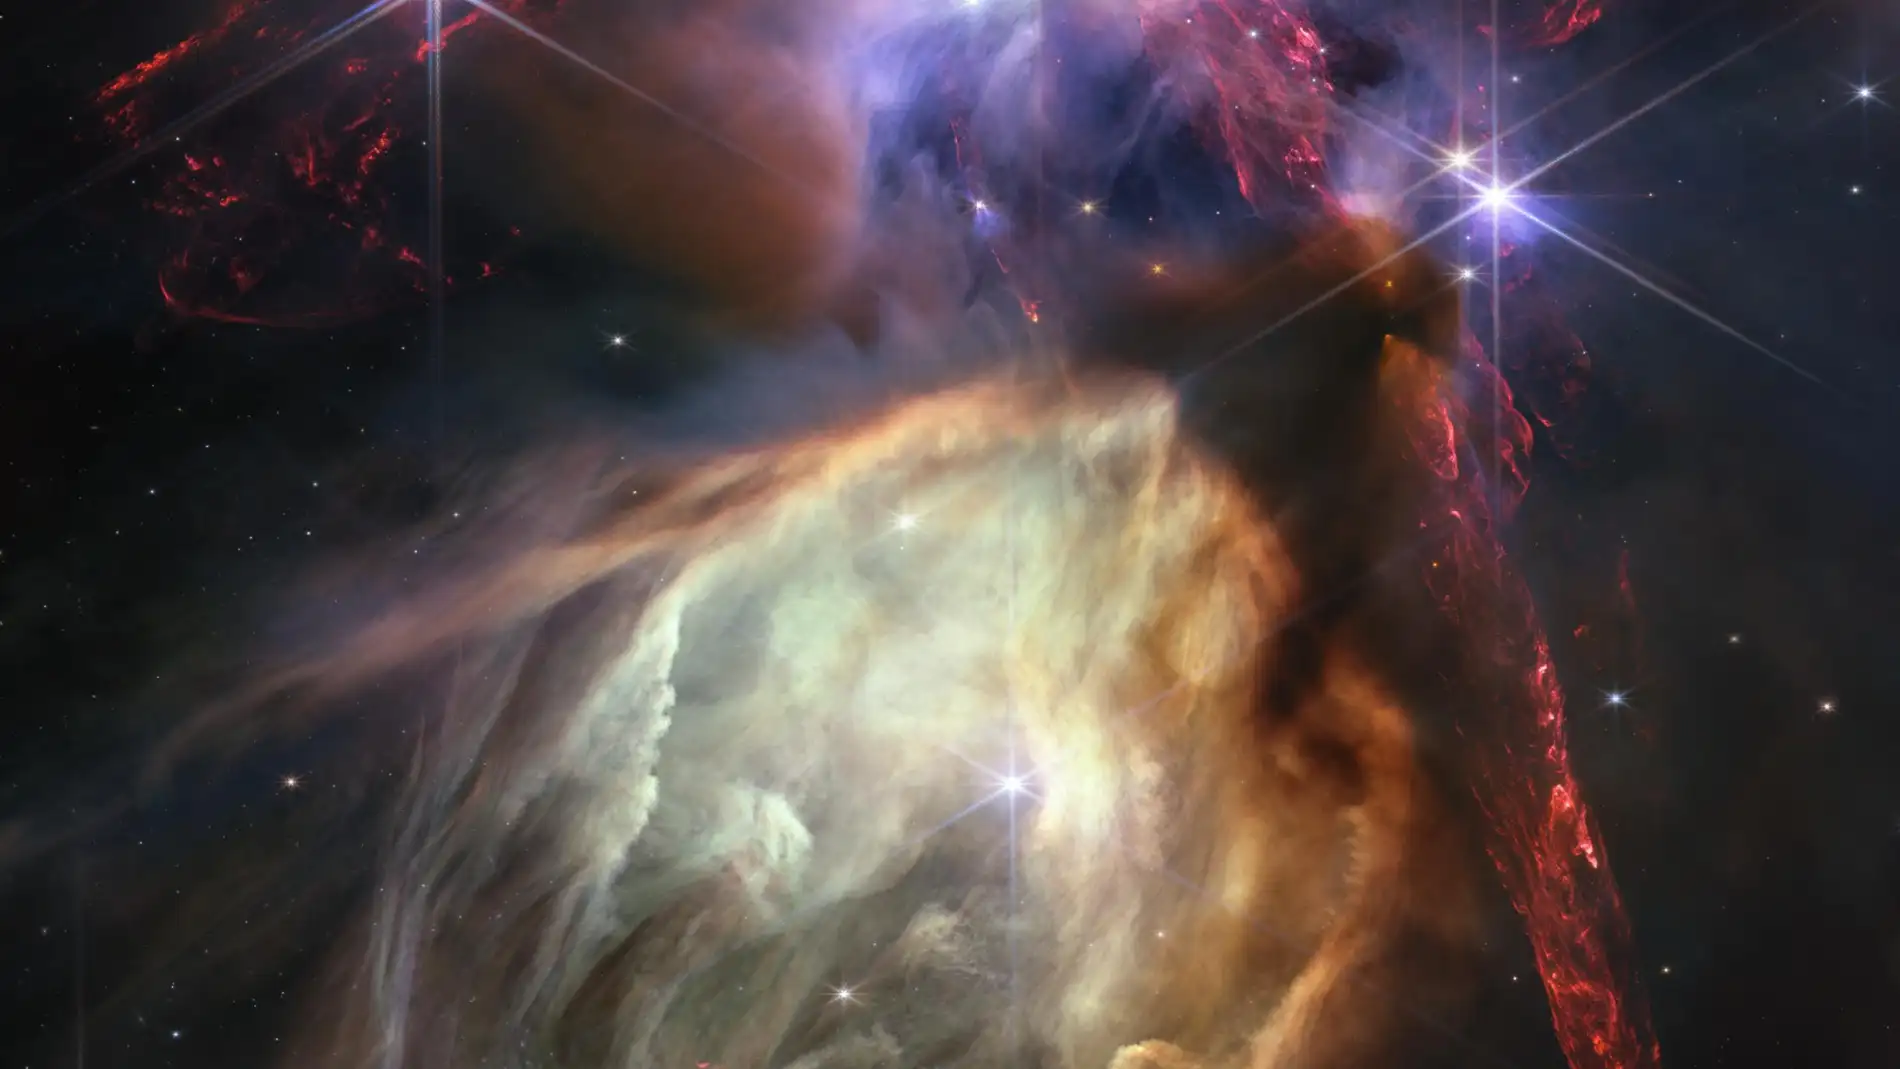 Complejo de nubes Rho Ophiuchi, la región de formación estelar más cercana a la Tierra captada por el Webb